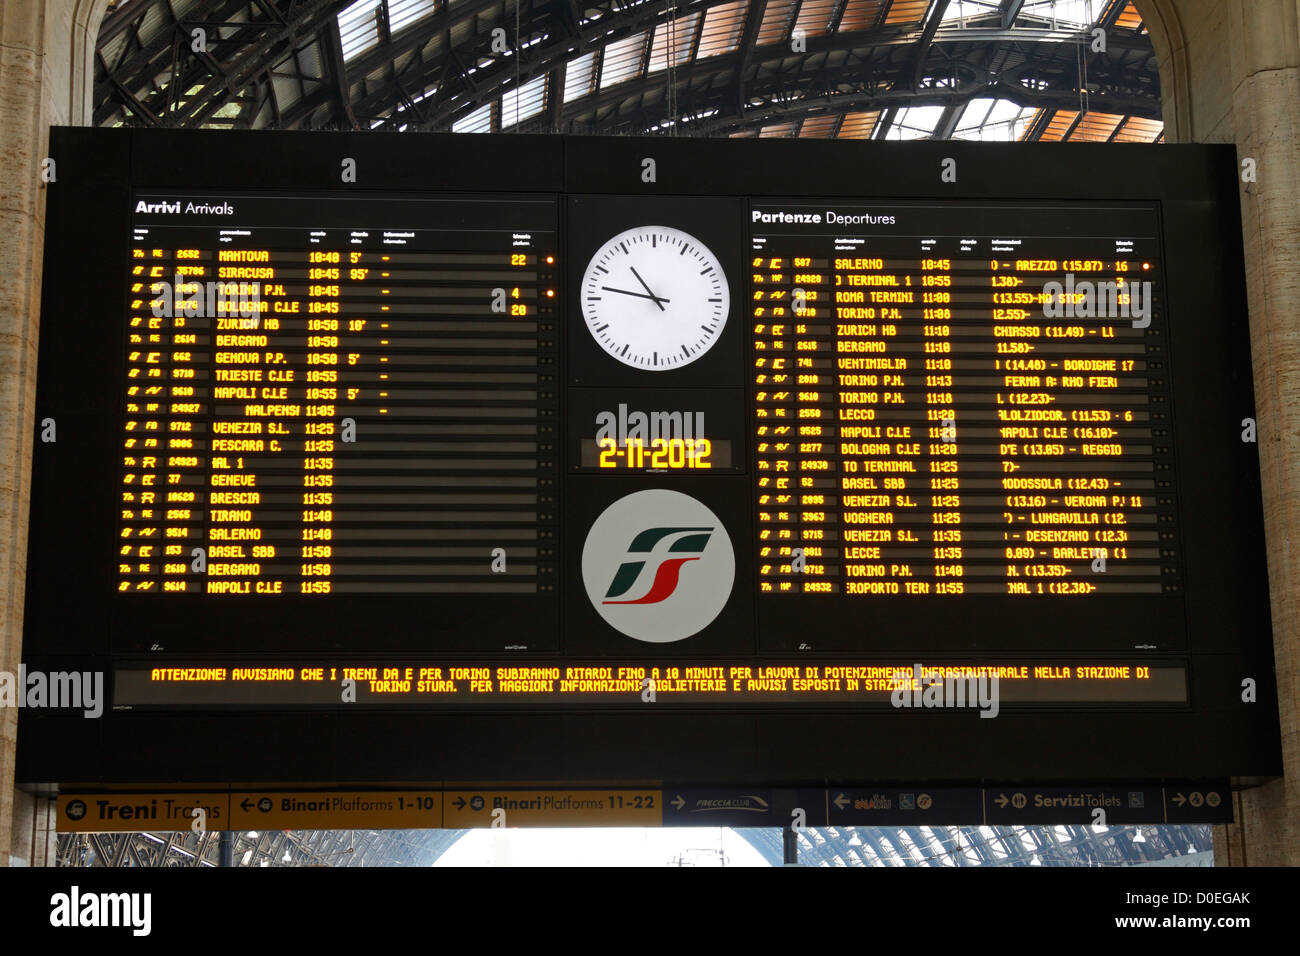 La Stazione Ferroviaria di Milano centrale elettronica di partenze e arrivi bordo, Italia, Europa Foto Stock